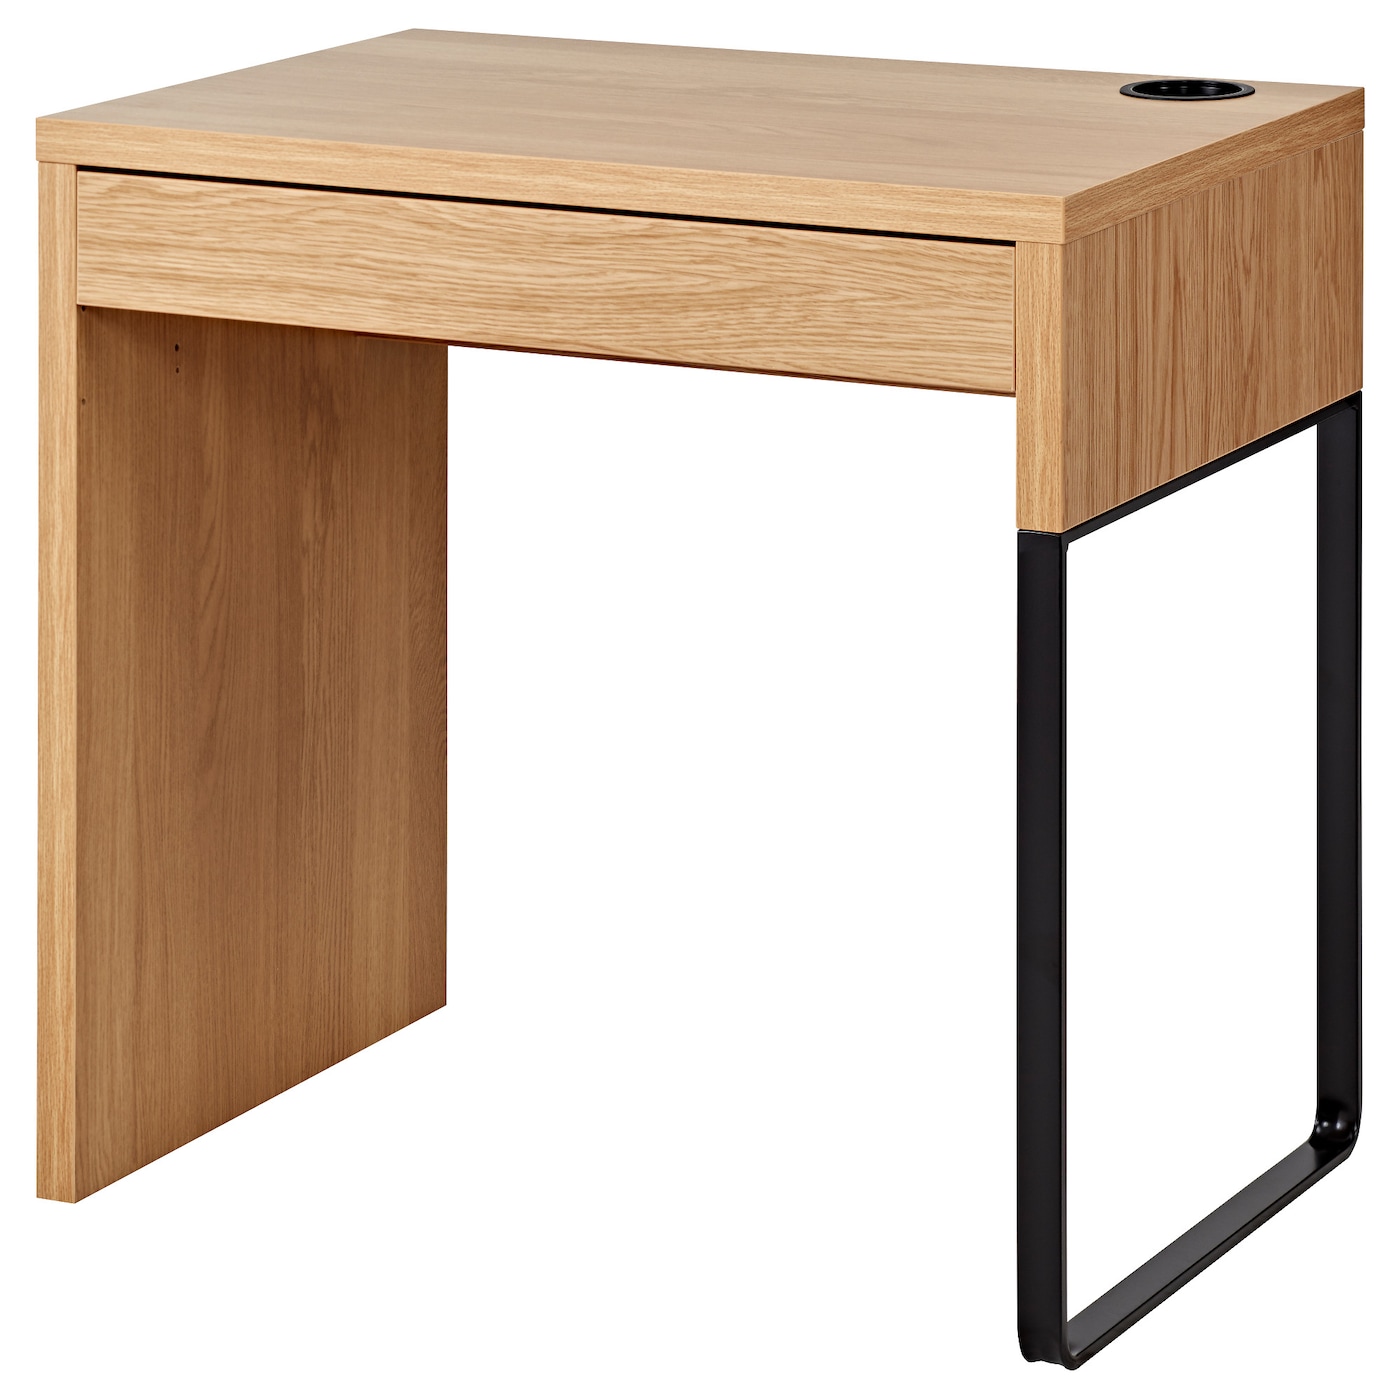 Письменный стол с ящиком - IKEA MICKE, 73х50 см, имитация дуба/черный, МИККЕ ИКЕА